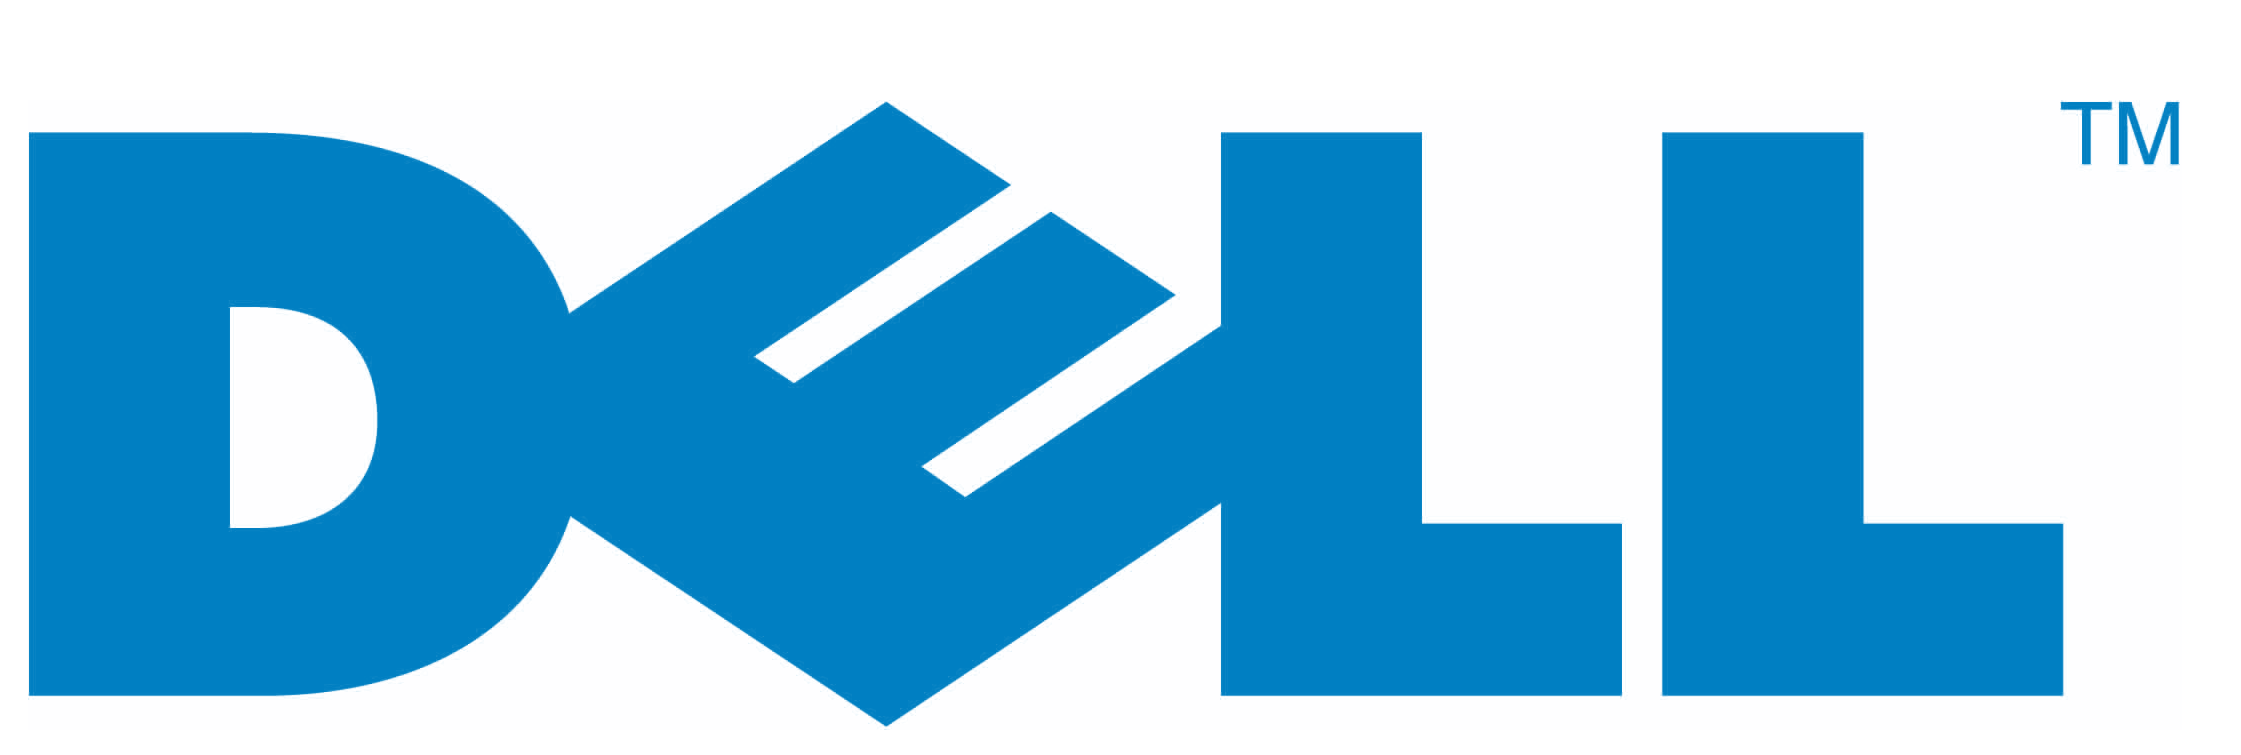 Логотипы брендов ноутбуков